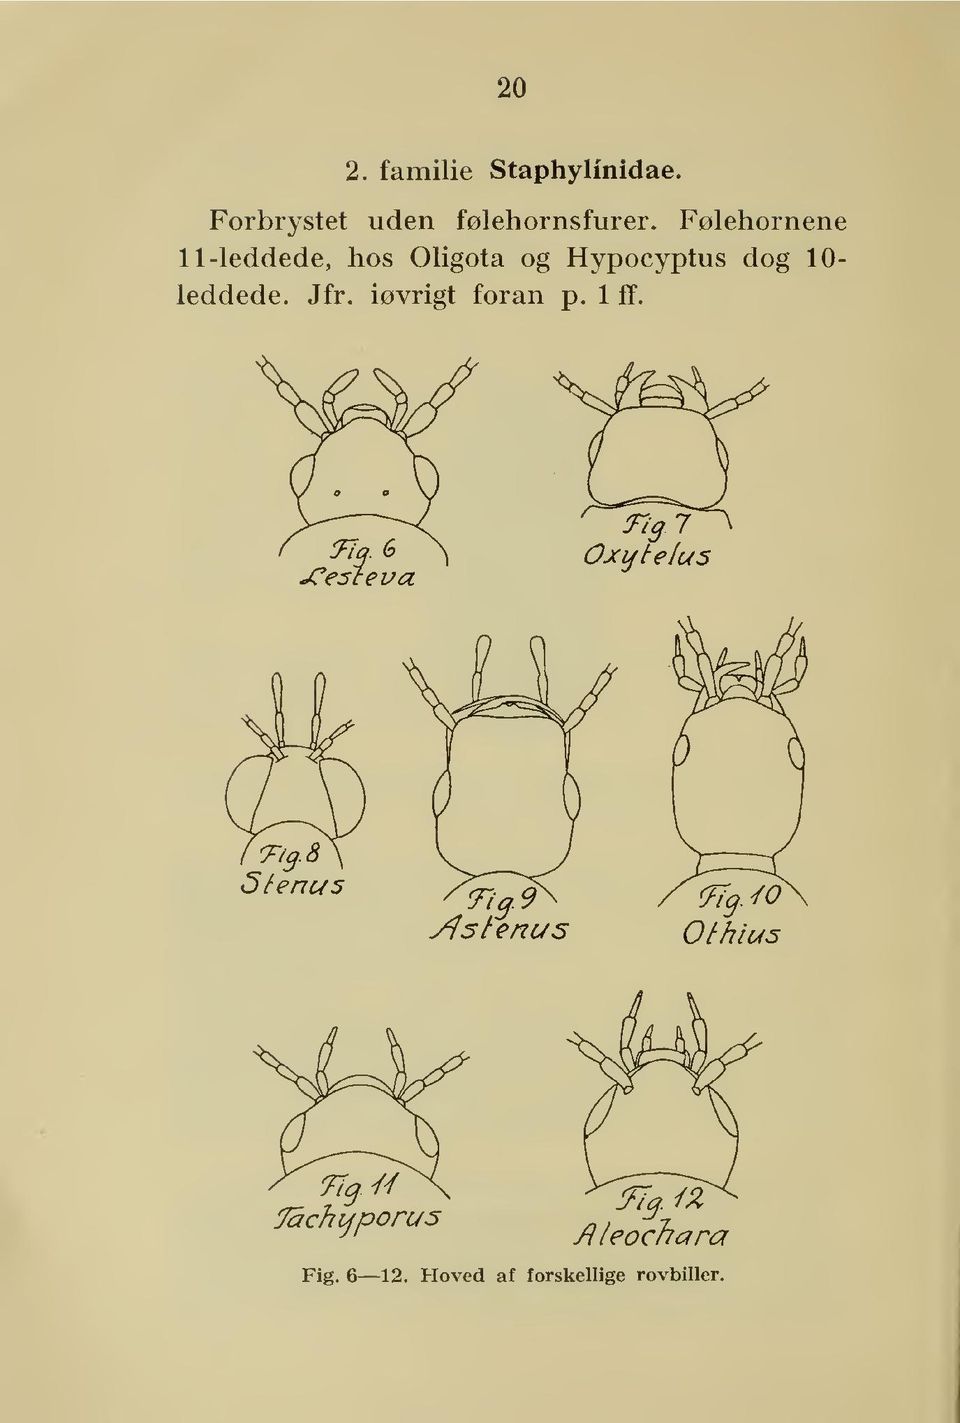 Følehornene 11-leddede, hos Oligota og Hypocyptus dog